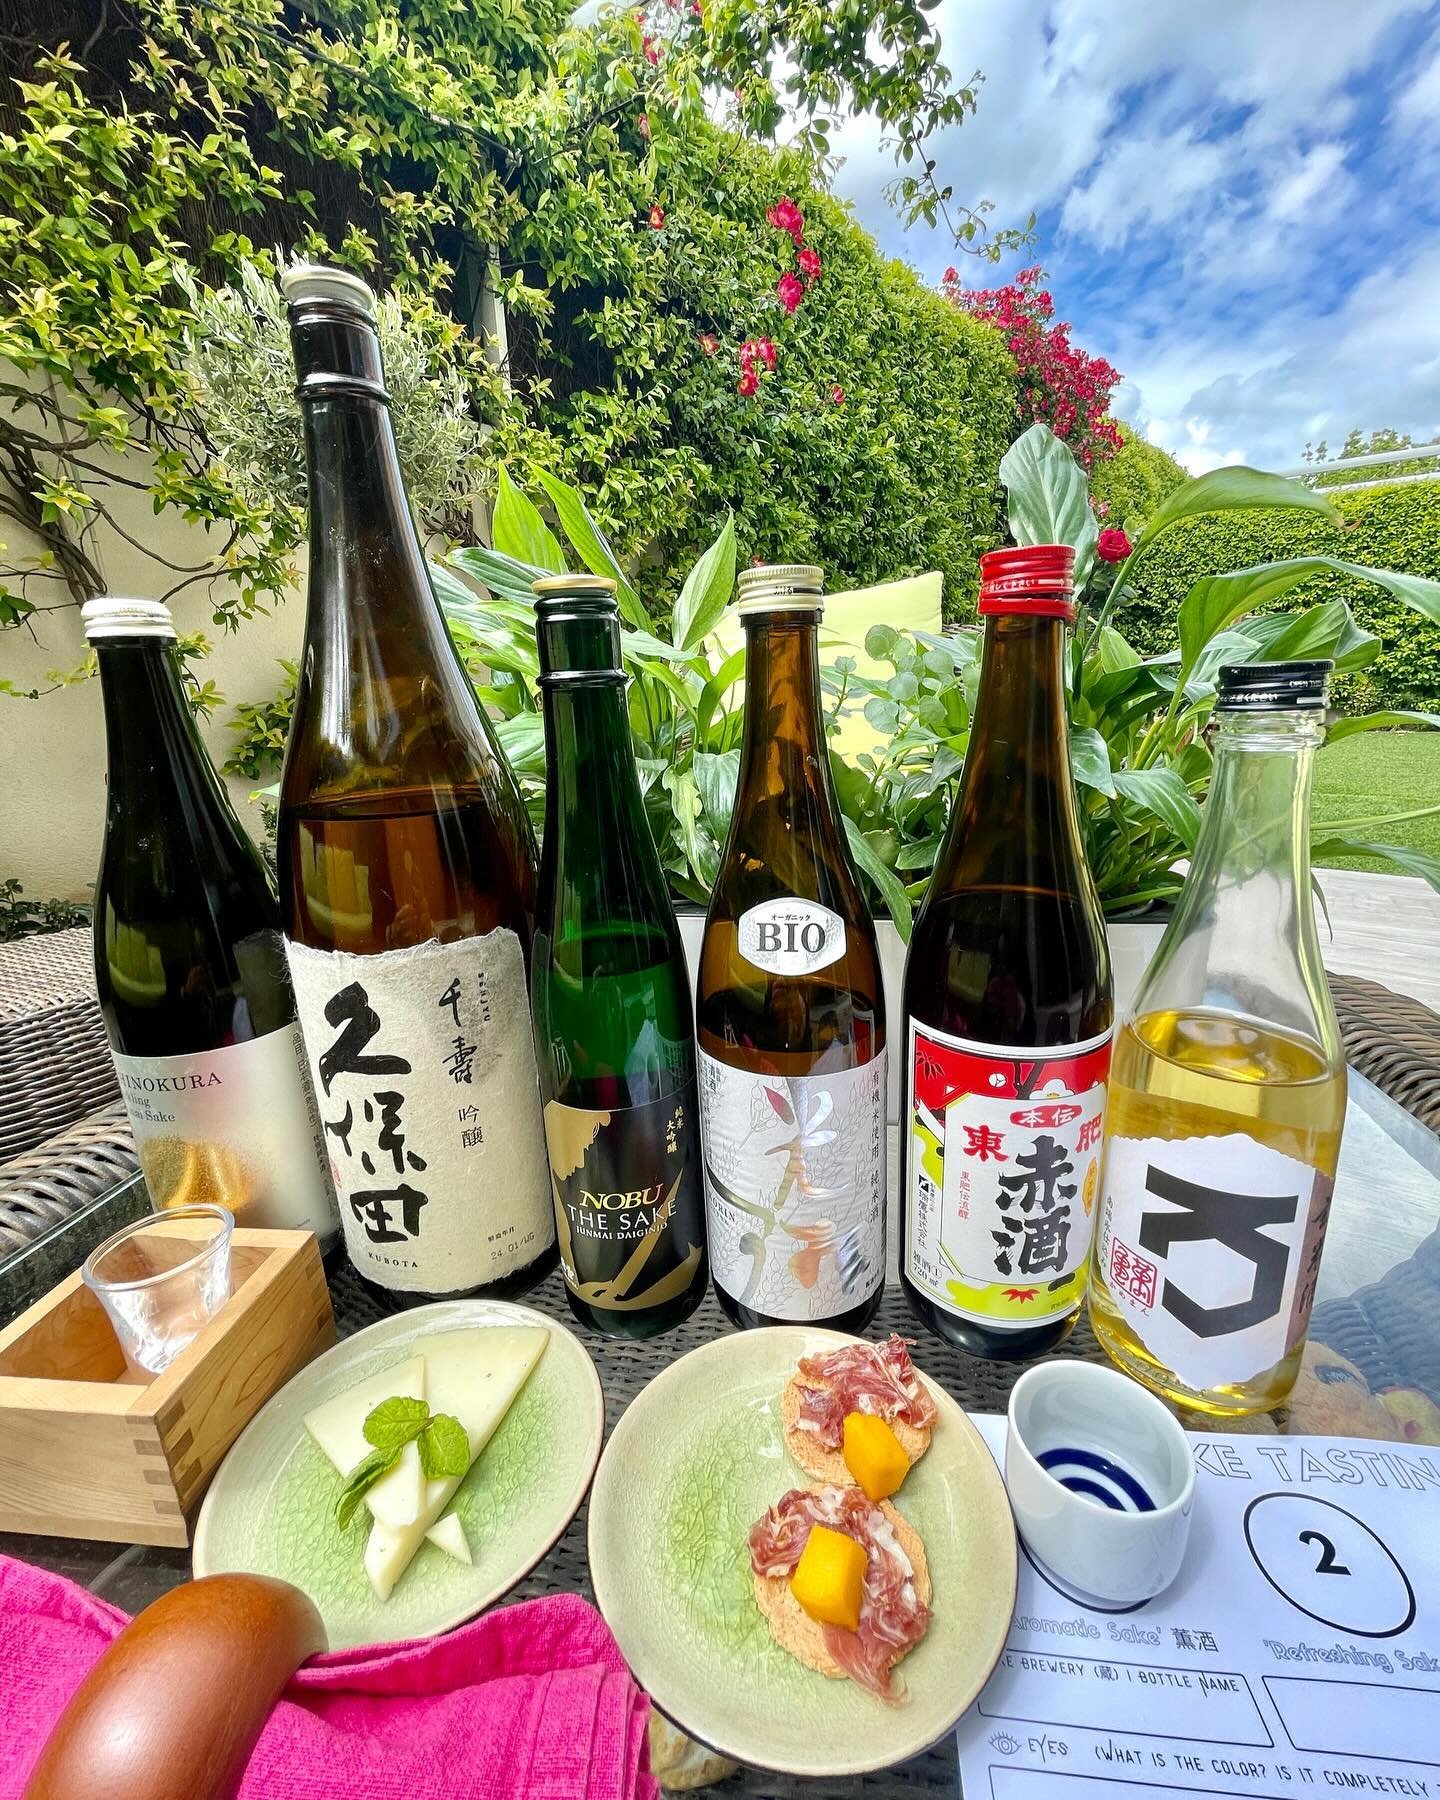 日本酒講座❤️Yay! Sake-filled weekend!😋 2 days in-a-row x Sake Education Workshops🍶6-7 Sake bottles enjoyed😋
⠀⠀⠀⠀⠀⠀⠀⠀⠀
With some truly amazing people from 🇨🇴🇳🇱 🇪🇸🇺🇸🇺🇦🇫🇷🇲🇽 who all received the Sake Sommelier Association  @sakesommeliers 🥷 